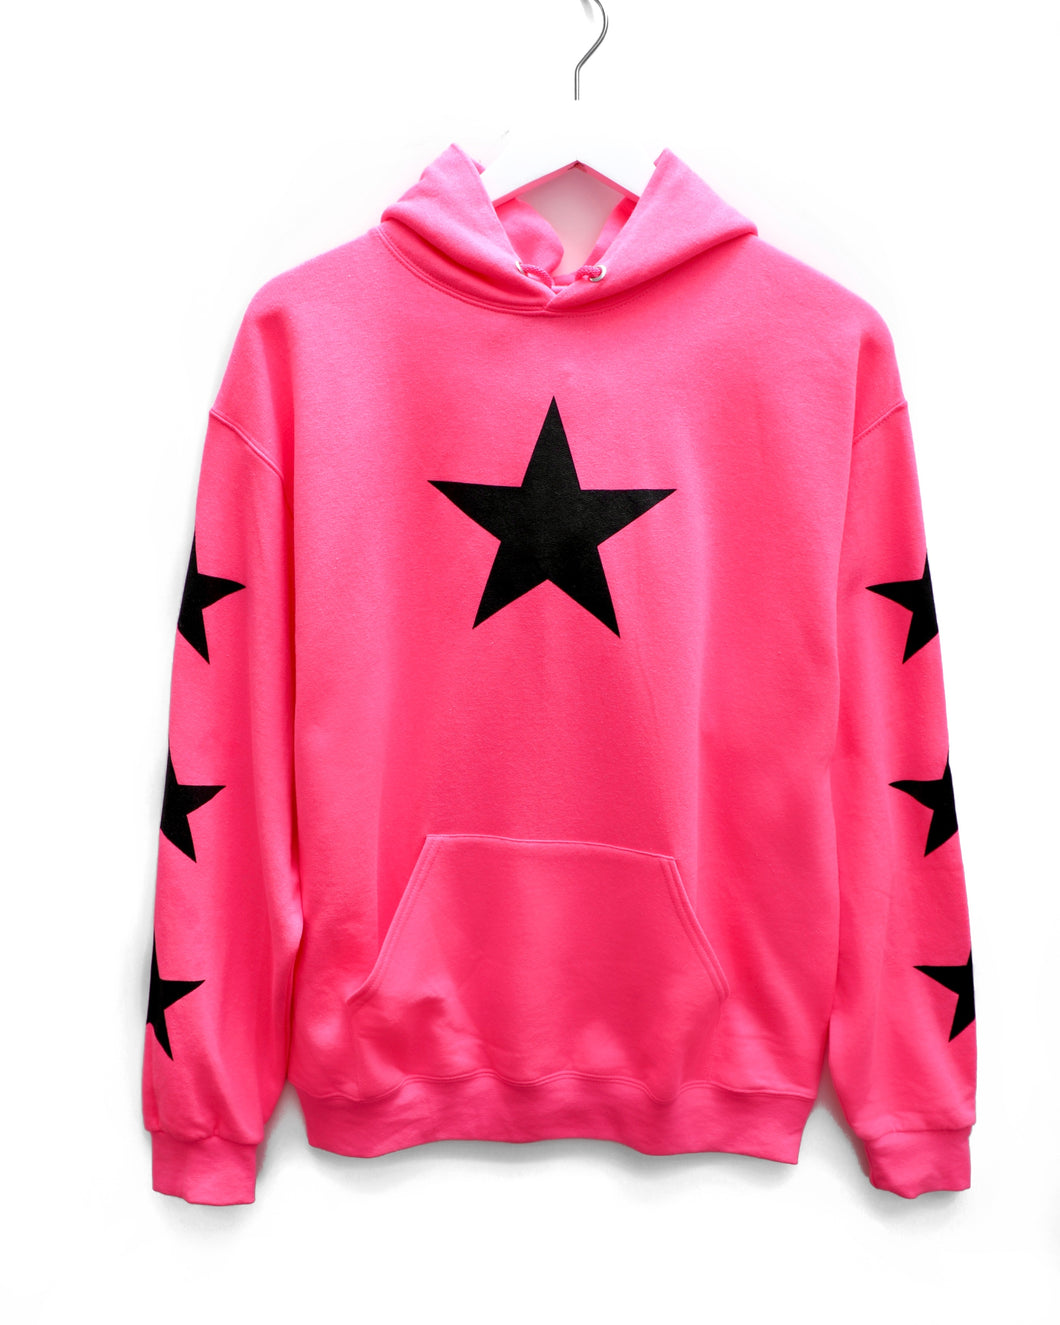 Pocket Hoodie / Hot Pink Black Star